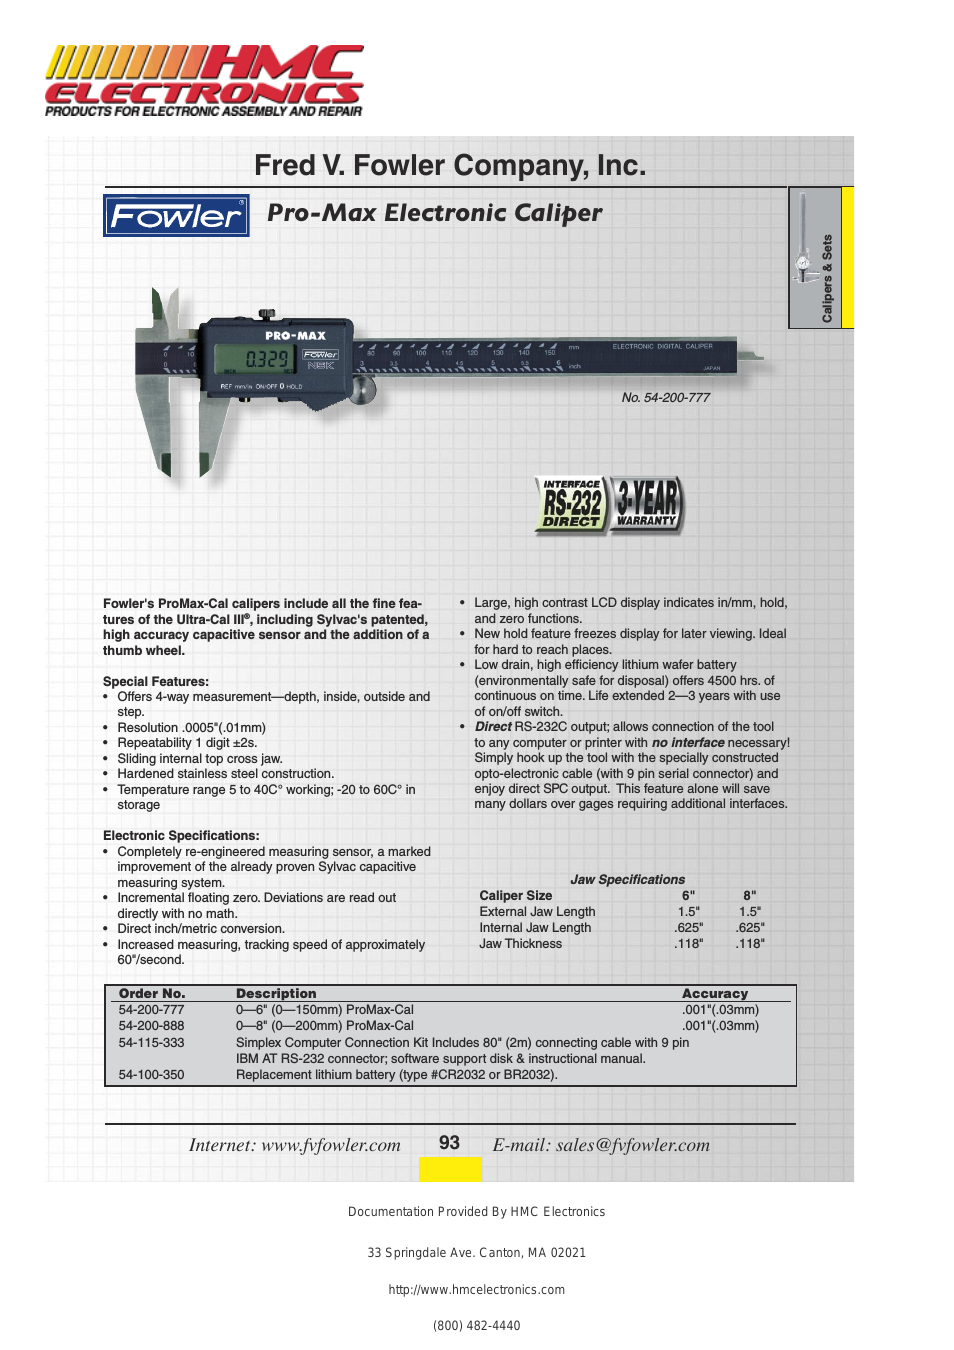 54-200-888 Fowler ProMax Electronic Caliper